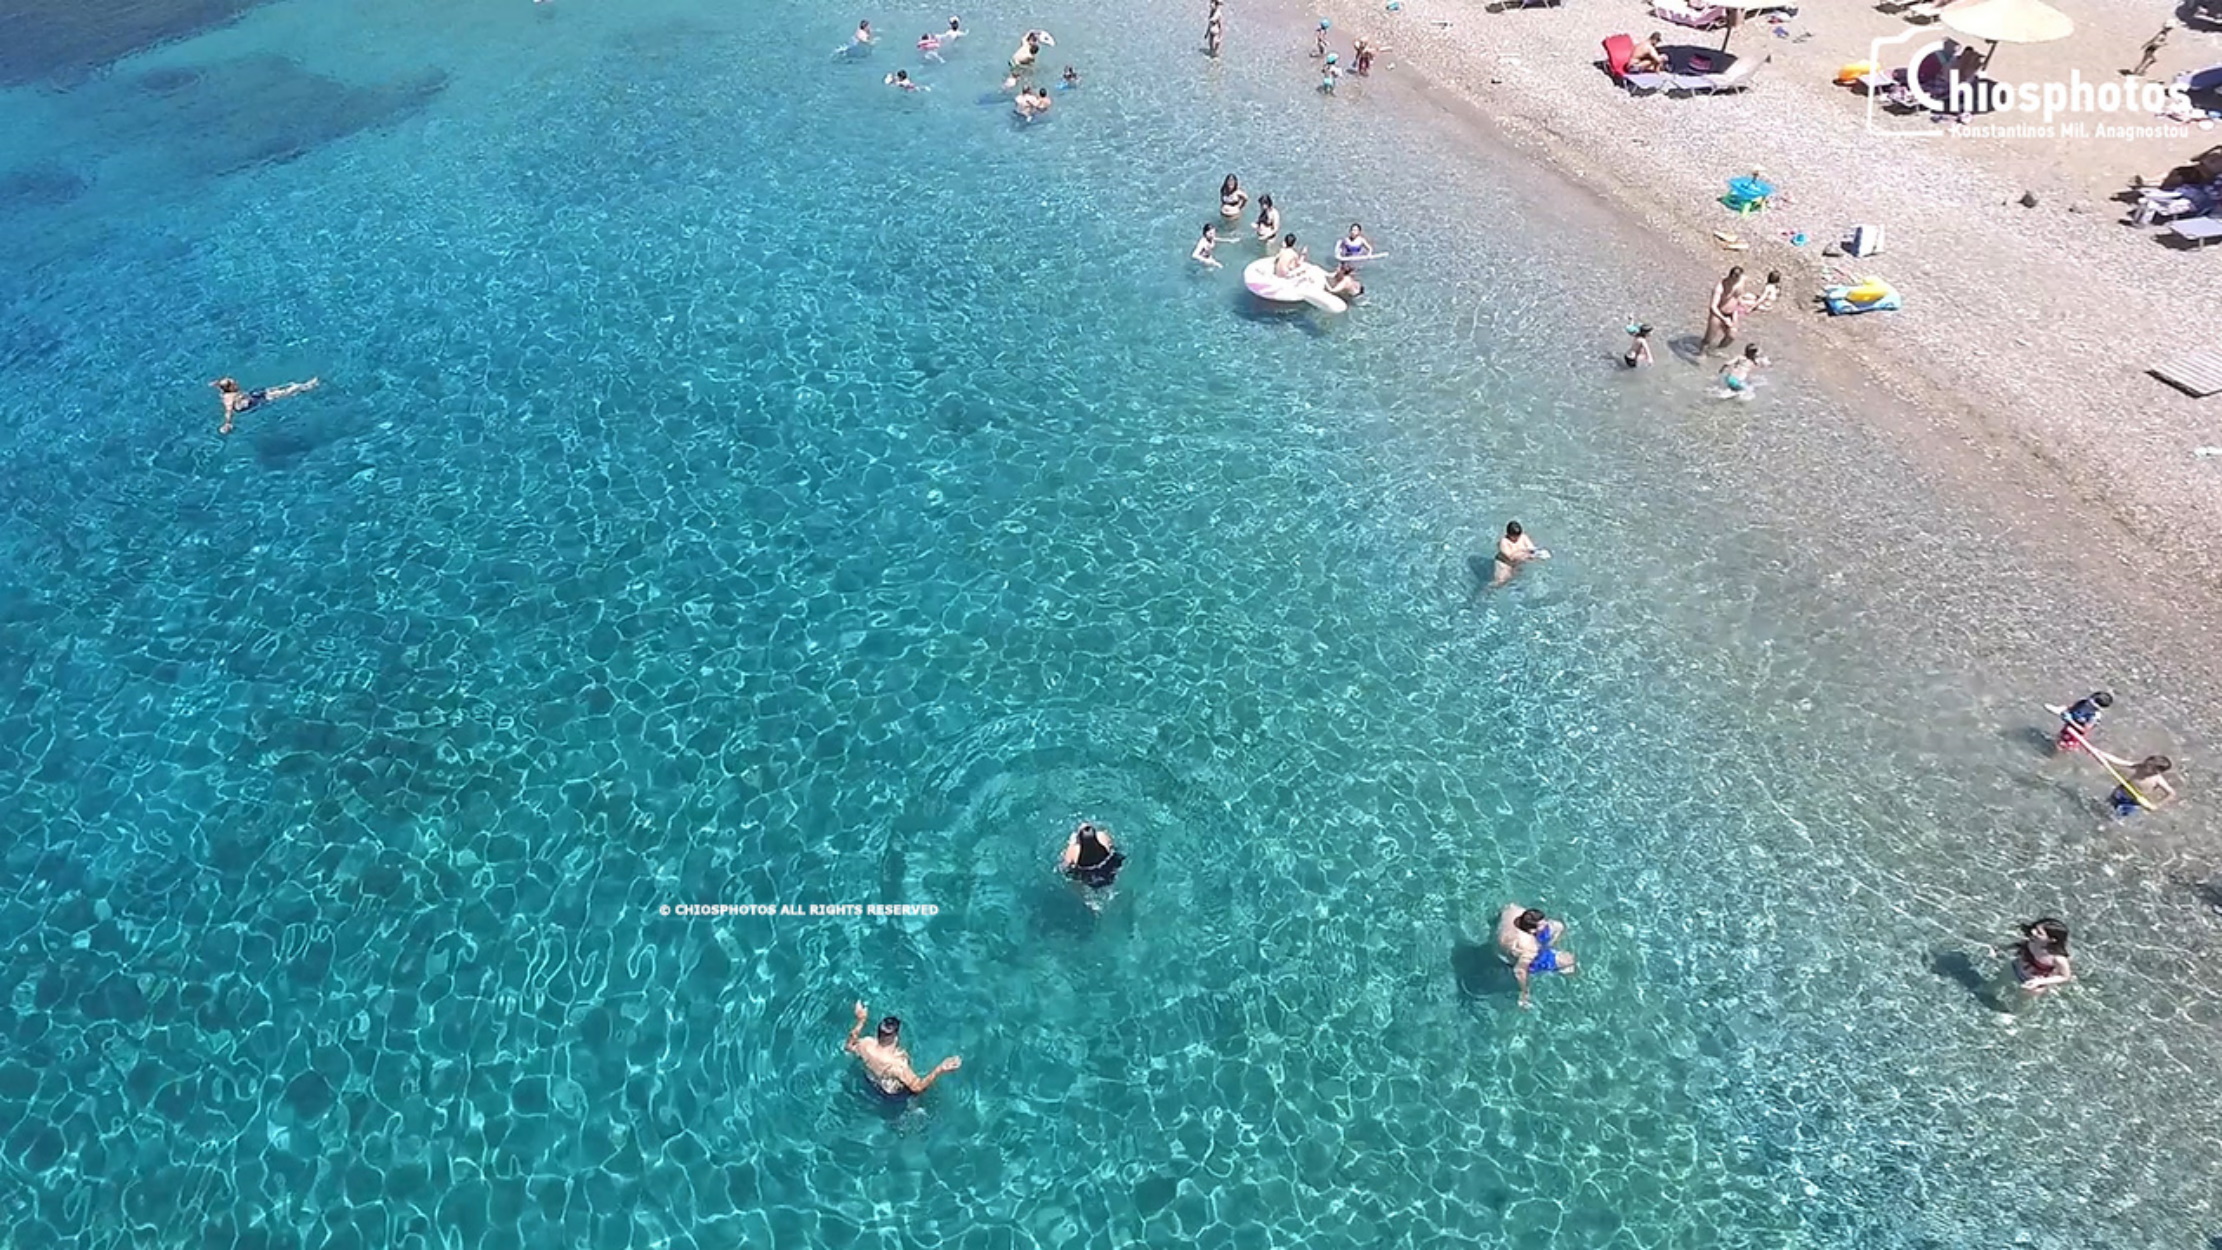 Παραλία Αυλωνιά: Μία από τις ωραιότερες παραλίες της Χίου σε φυσικό κόλπο, με γαλαζοπράσινα νερά